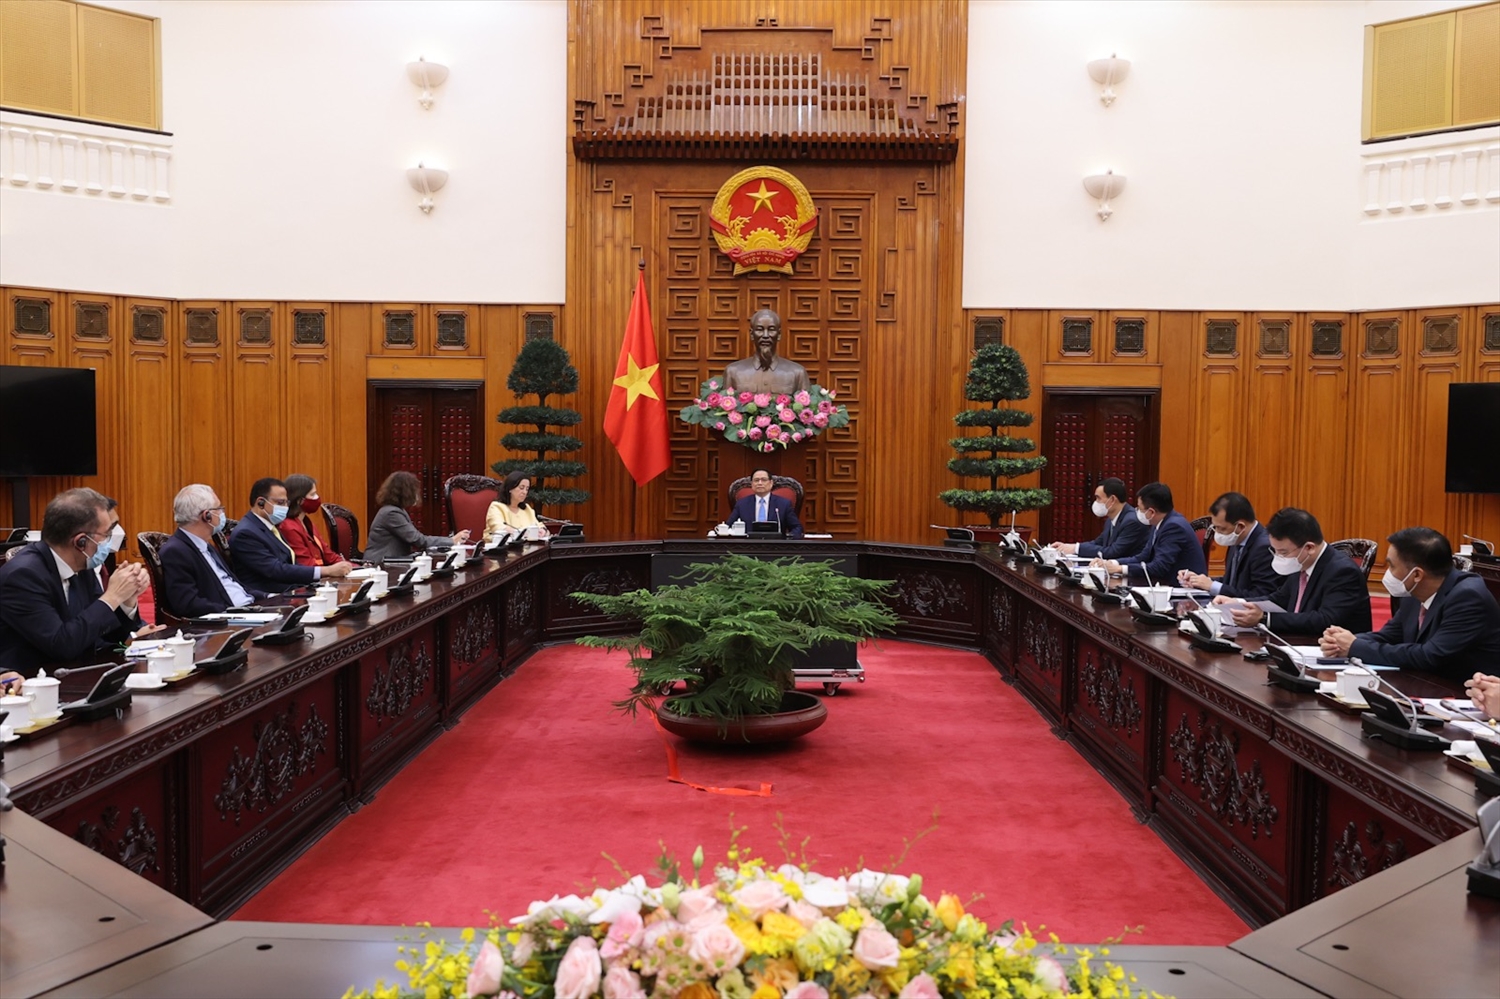 Thủ tướng Phạm Minh Chính khẳng định Chính phủ Việt Nam luôn coi WB là người bạn tốt, đối tác phát triển rất quan trọng - Ảnh: VGP/Nhật Bắc